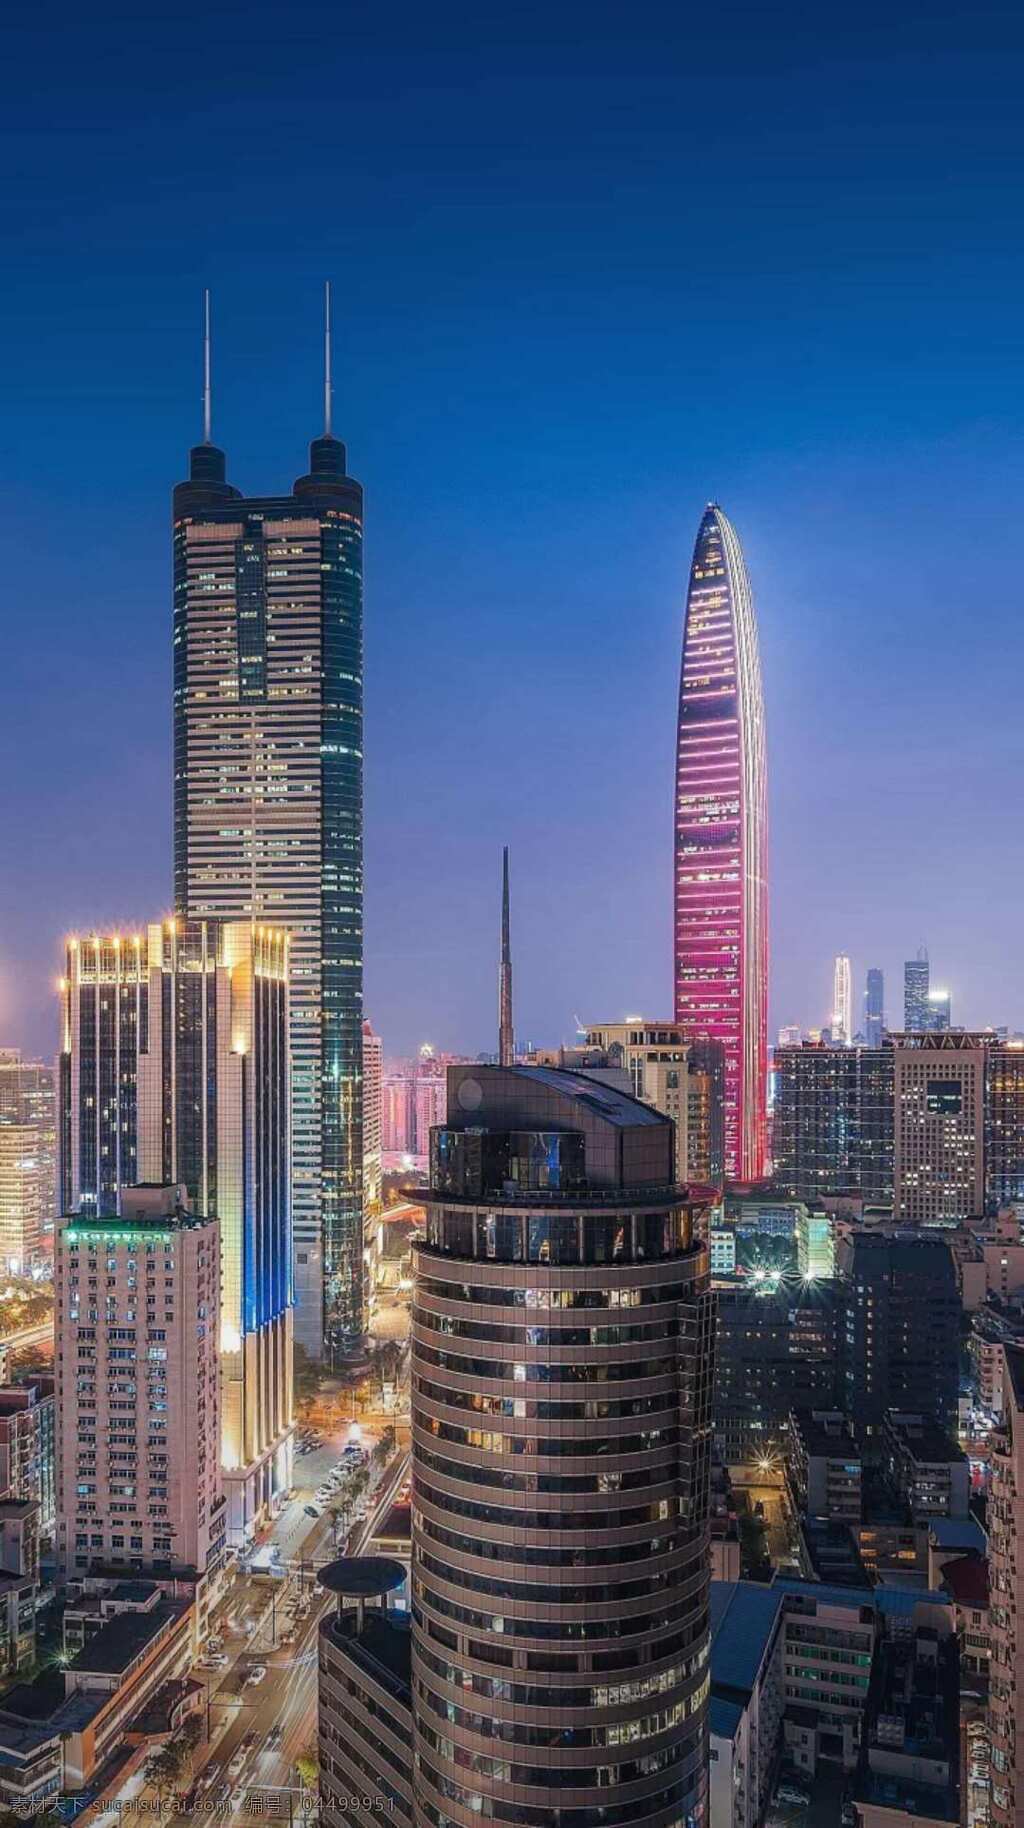 壮观 城市 风景 高楼大厦 繁华的城市 城市夜景 美丽的夜景 罗湖 深圳 中国城市 旅游摄影 国内旅游